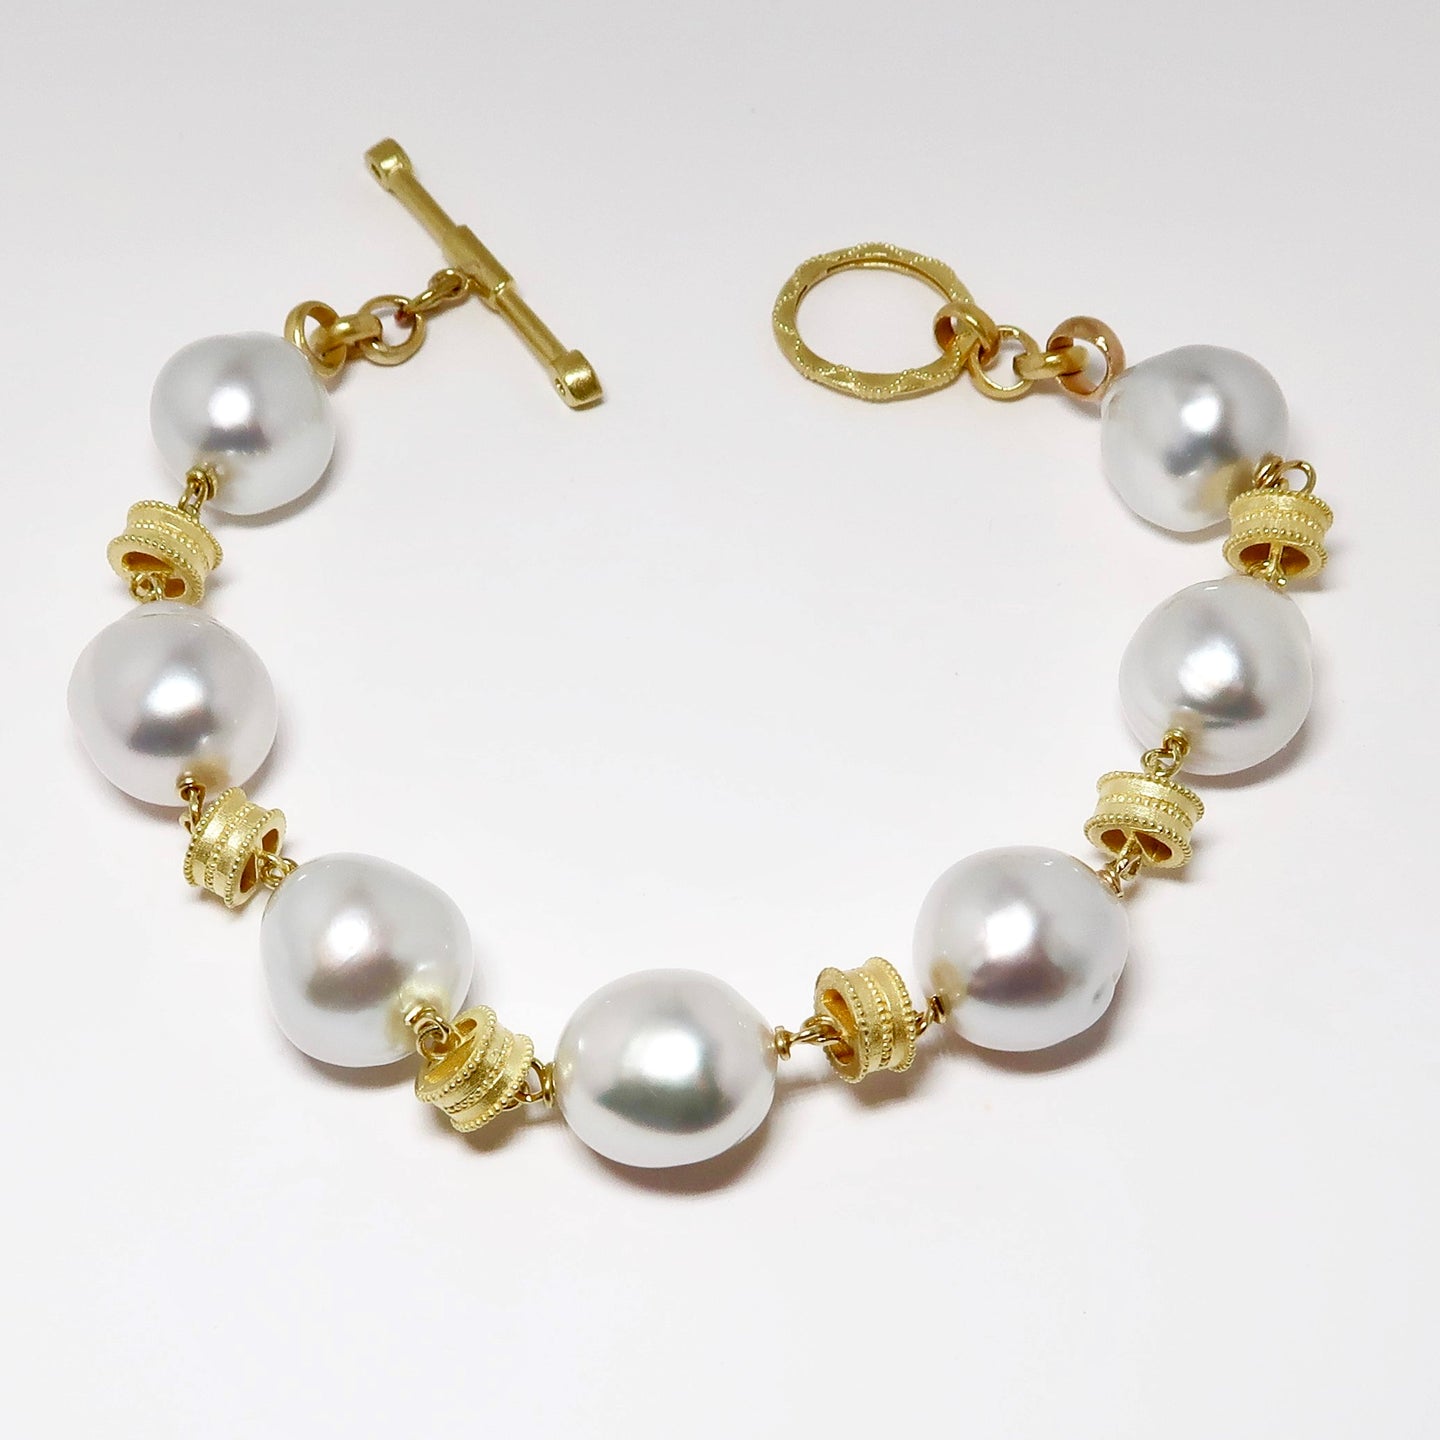 13 - 11mm South Seas Pearl Bracelet, 18k Yellow Gold